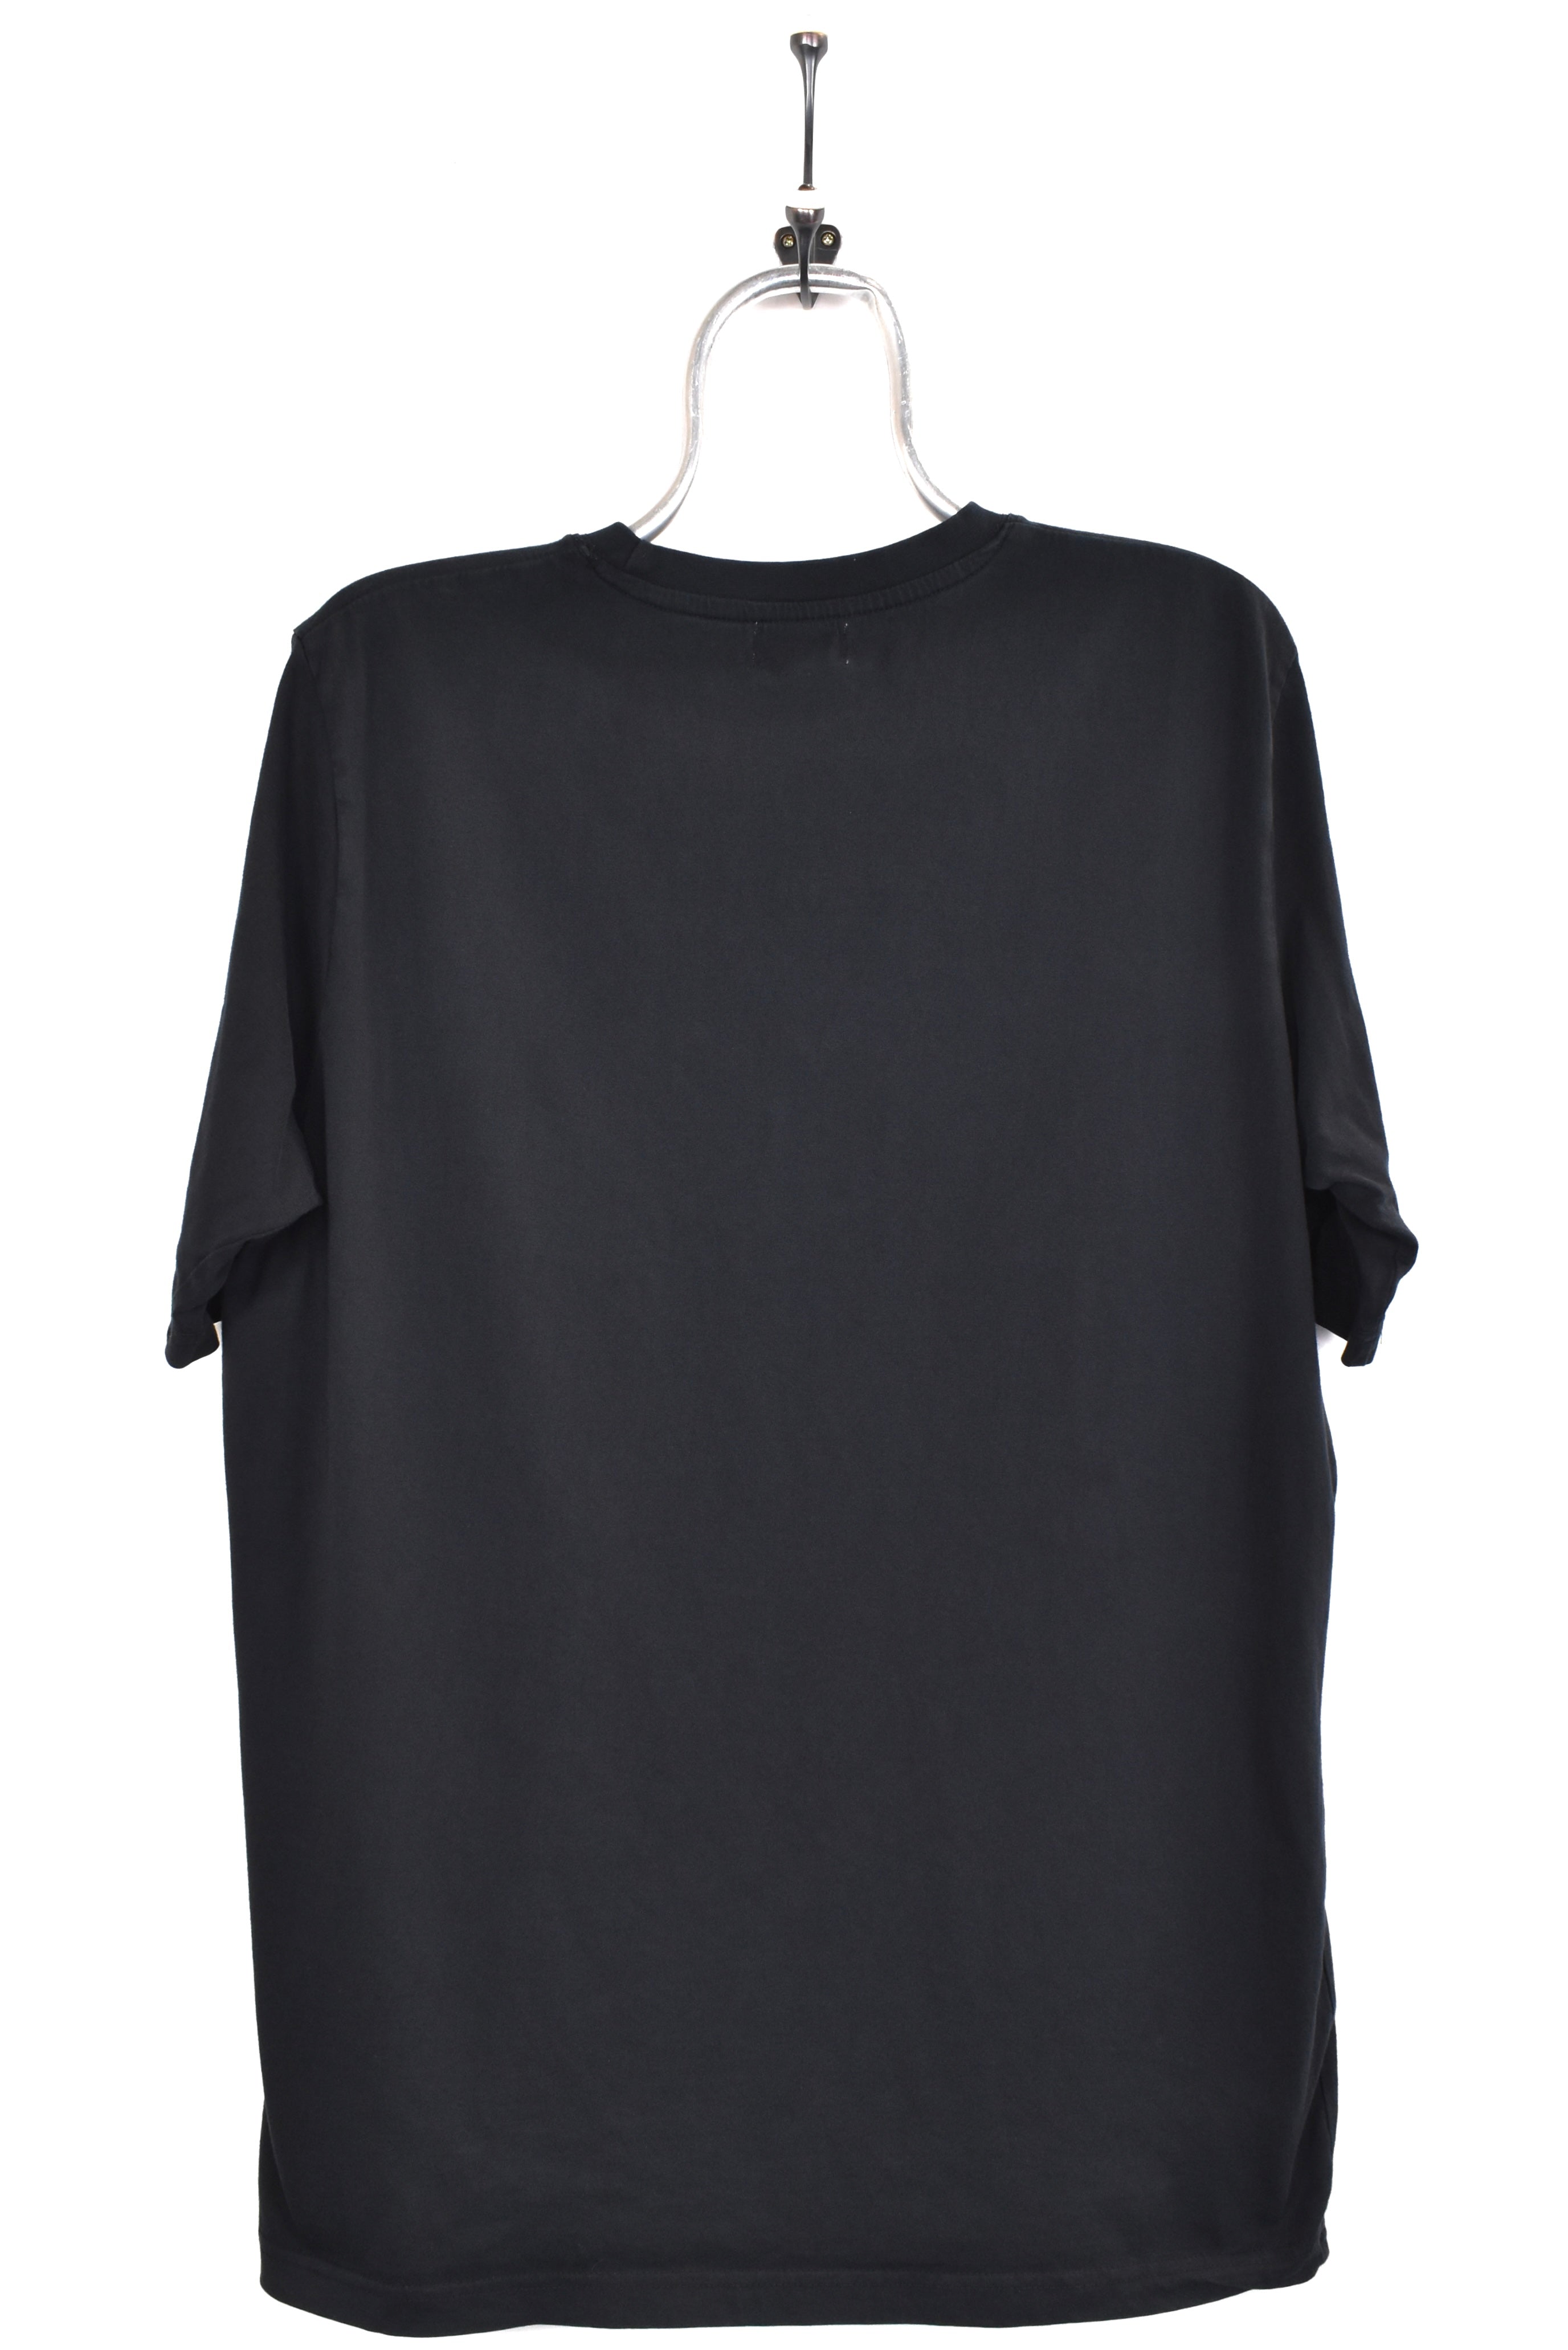 Vintage Kappa shirt, black graphic tee - AU Medium KAPPA